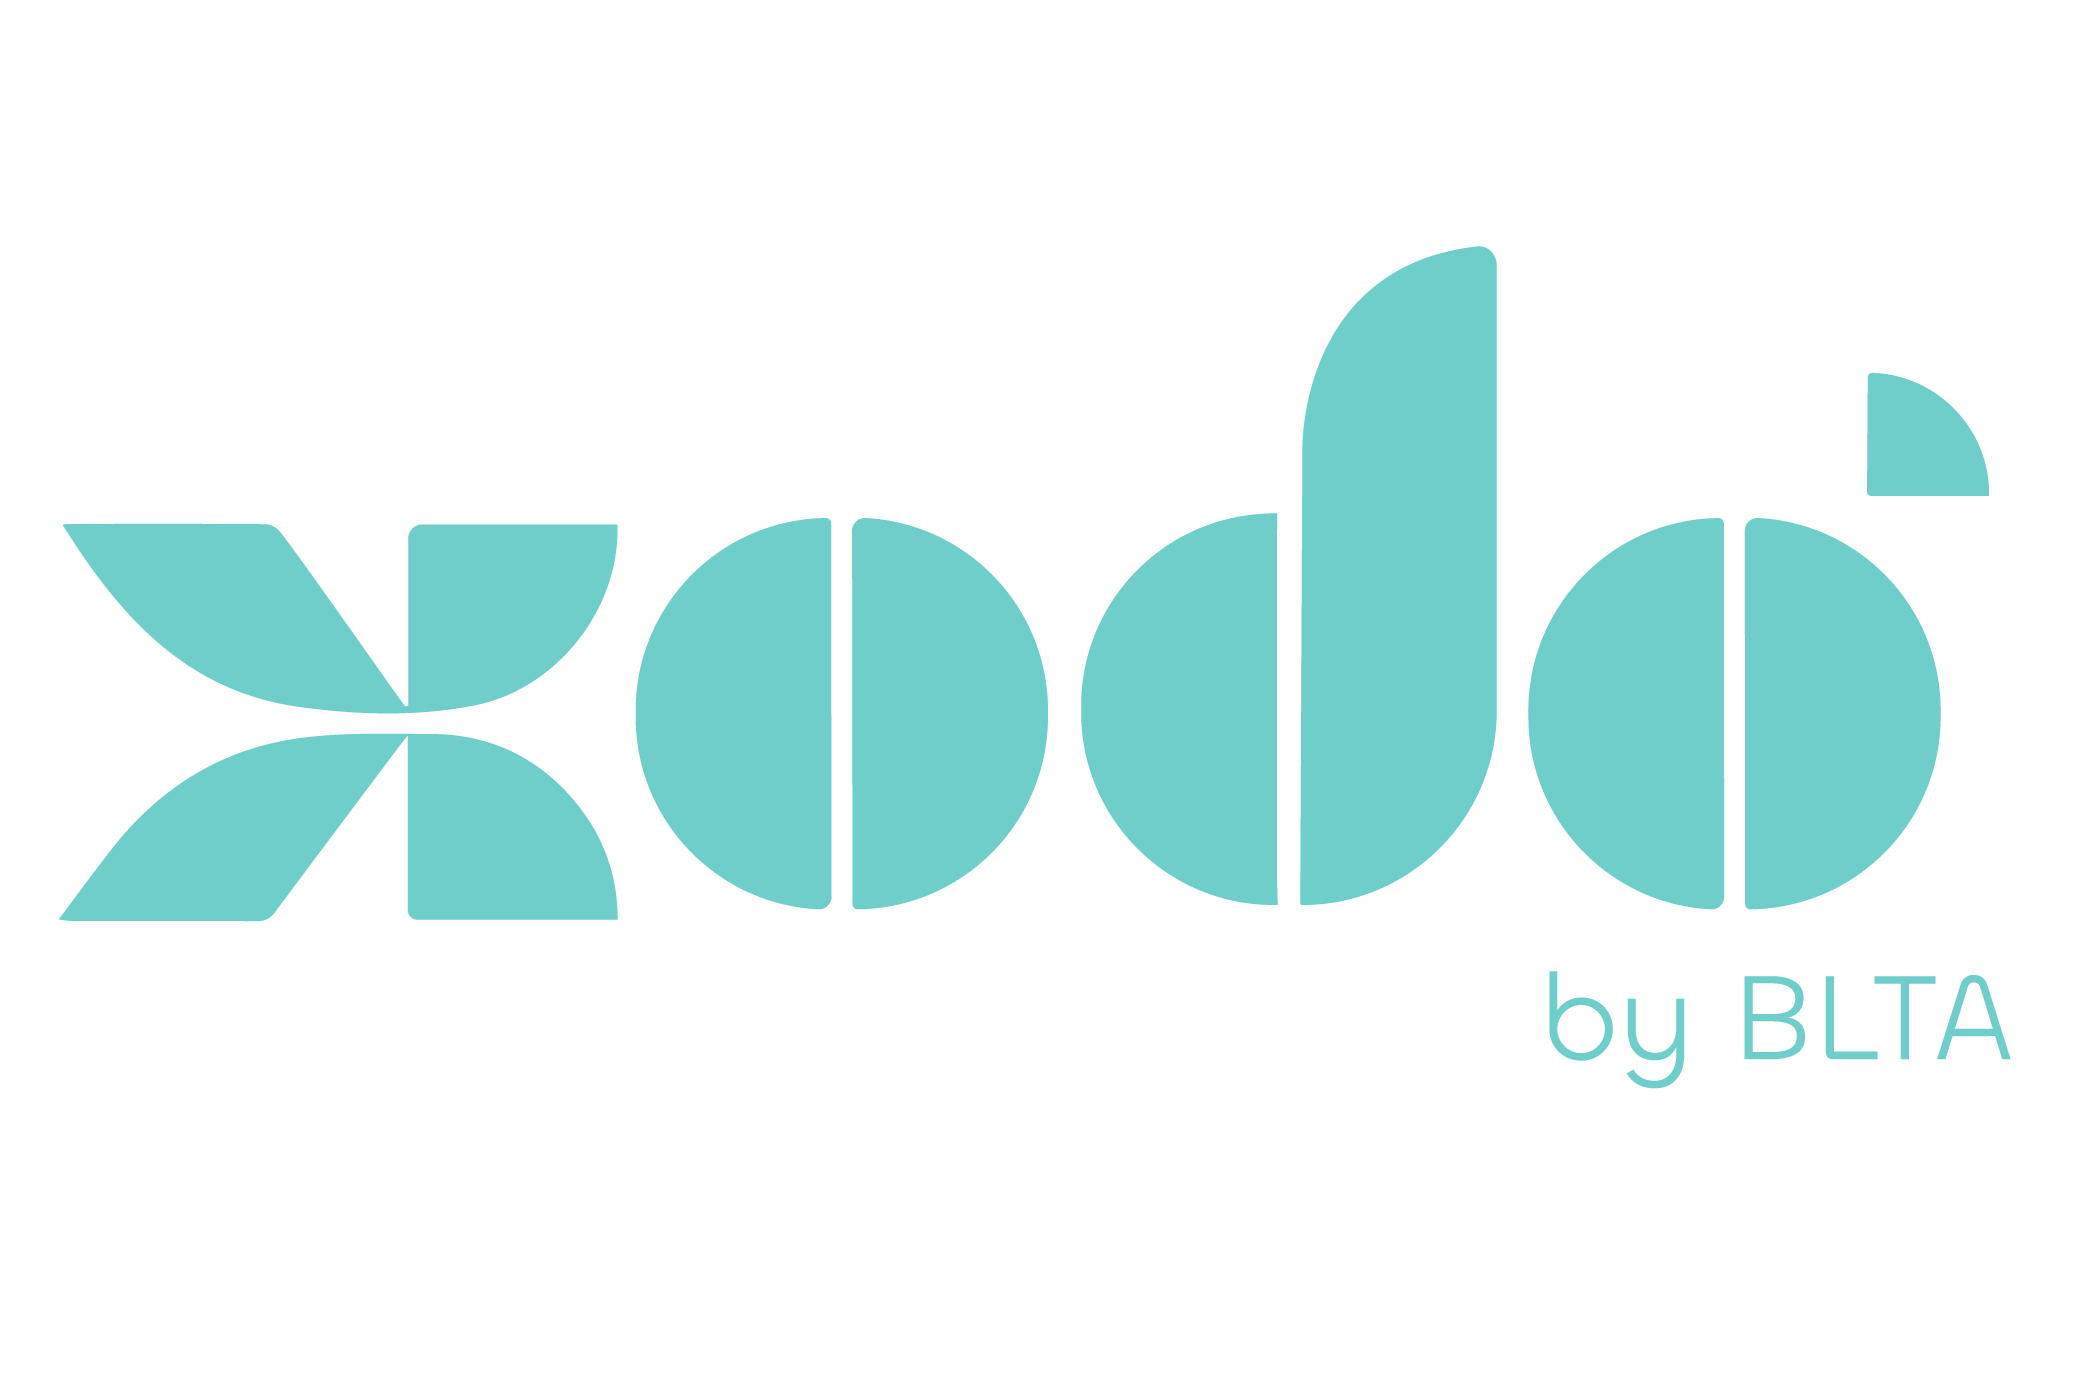 Xodo Identidade Visual 15 e1710204442424 Xodó by BLTA: associação anuncia lançamento de nova marca hoteleira